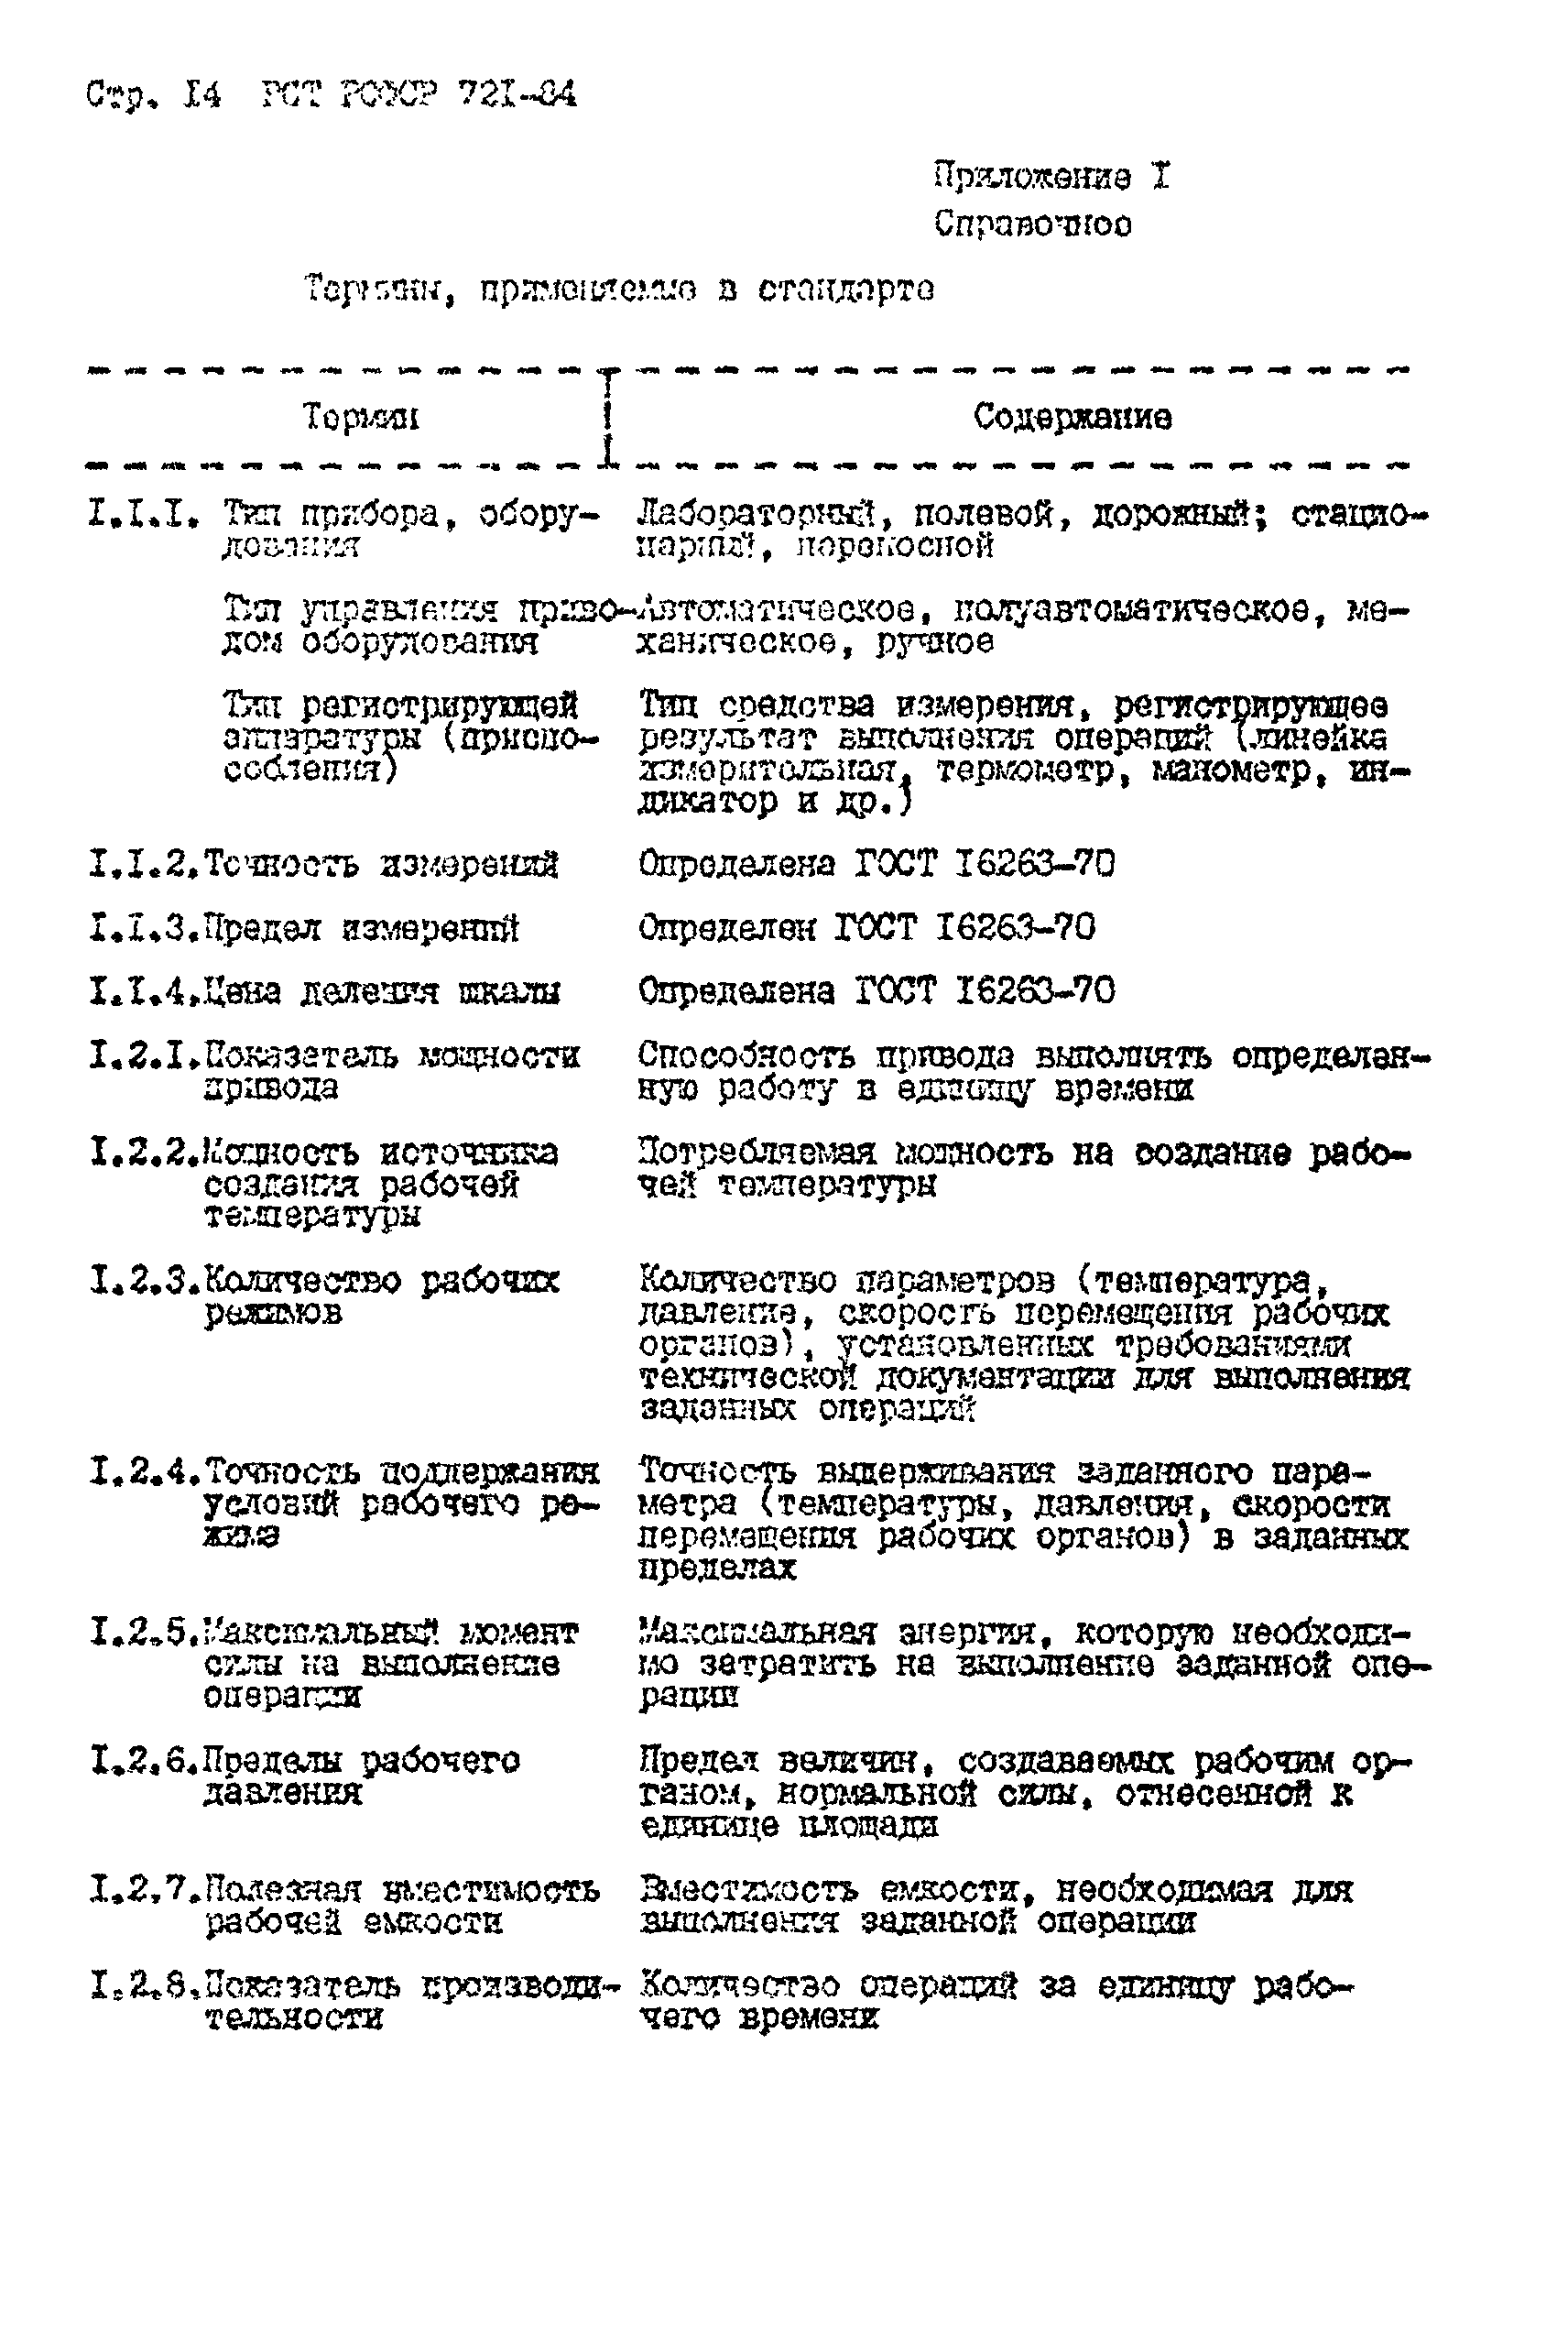 РСТ РСФСР 721-84